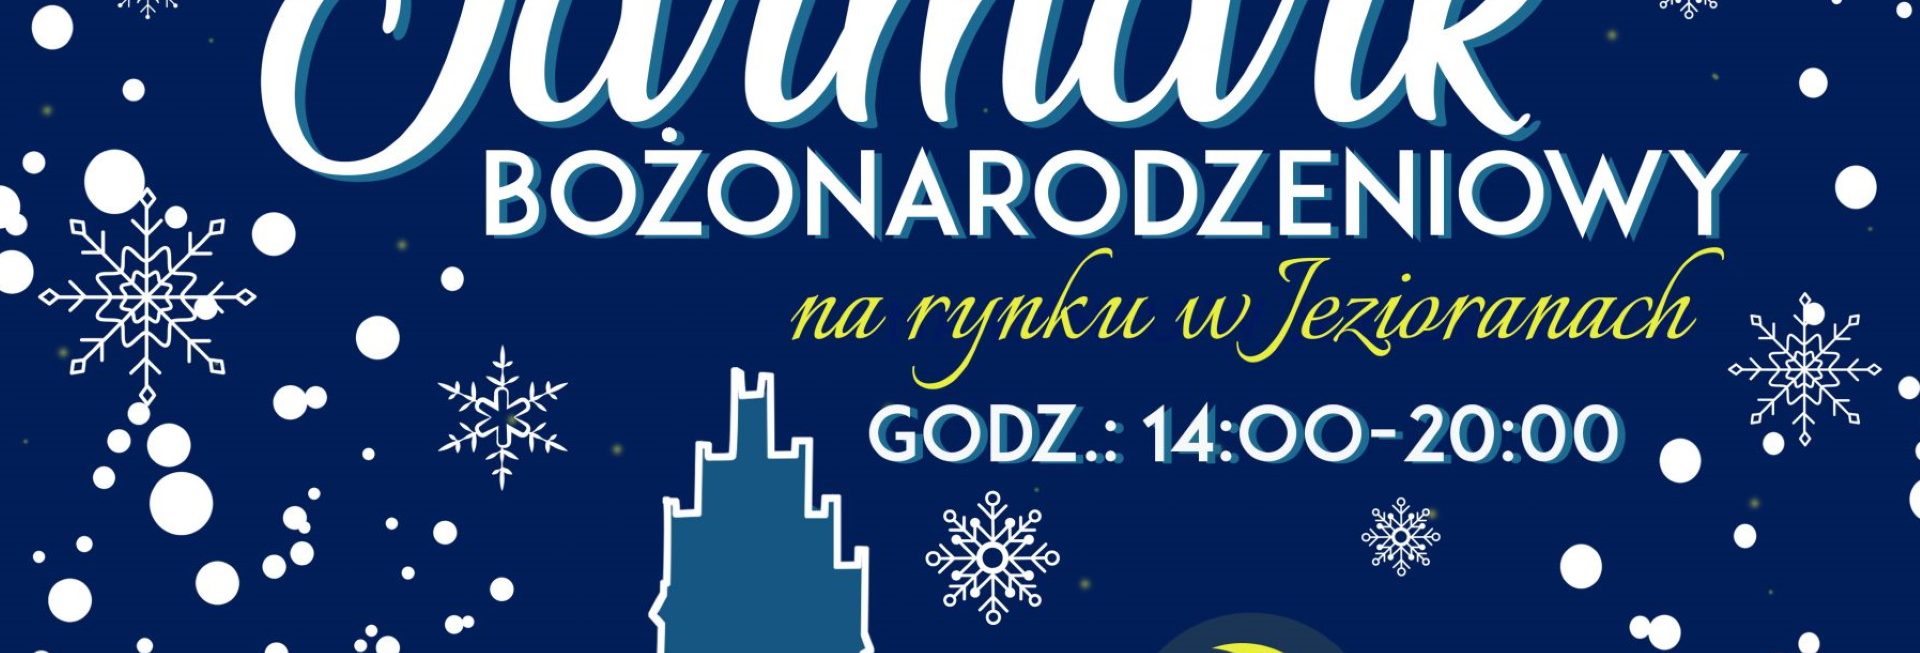 Plakat graficzny zapraszający do Jezioran na Jarmark Bożonarodzeniowy w Jezioranach 2021.  